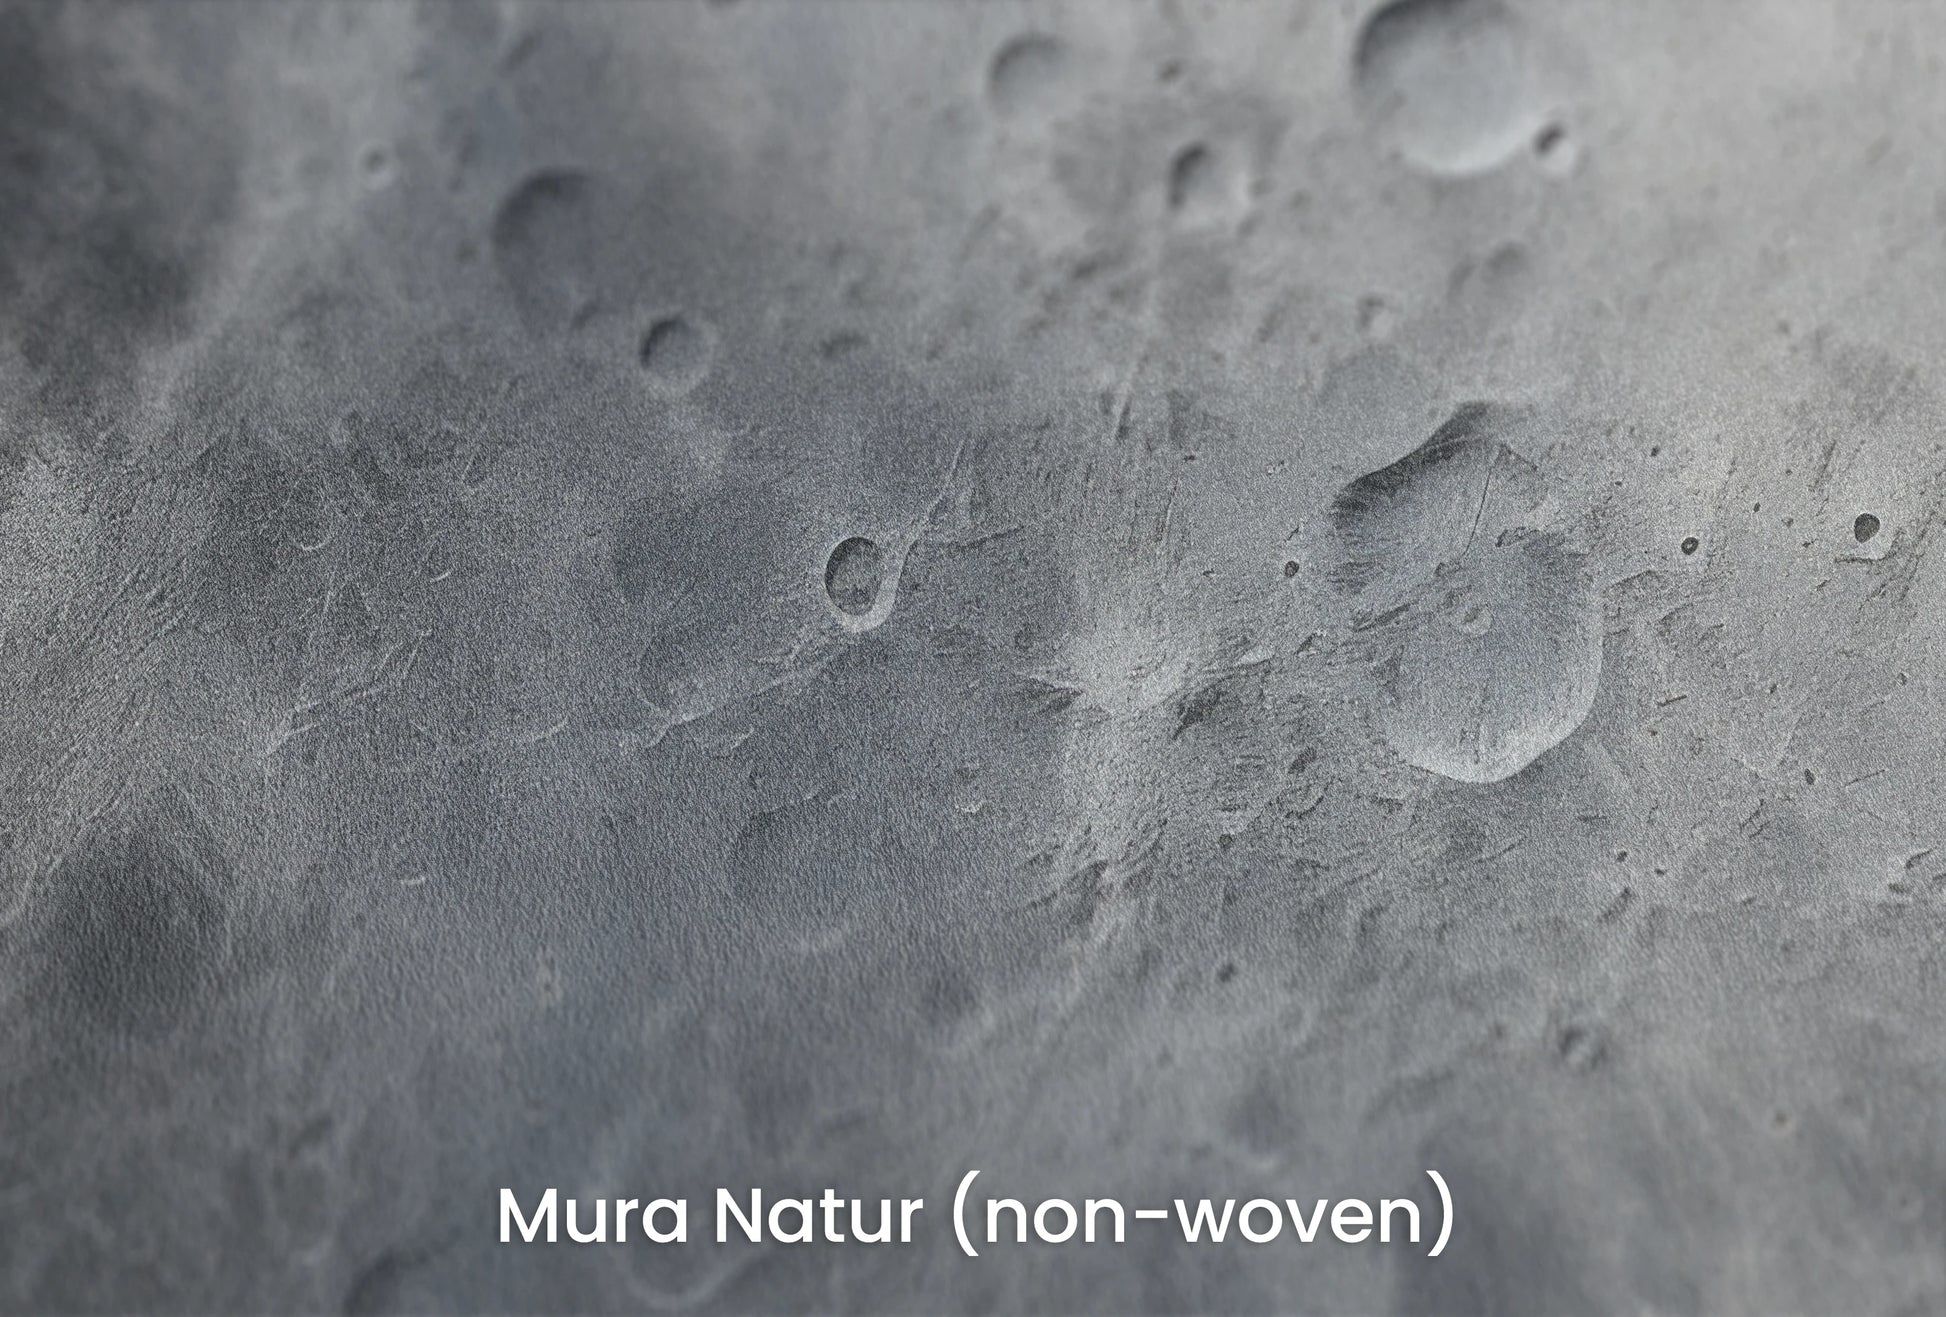 Zbliżenie na artystyczną fototapetę o nazwie Moon's Monochrome #2 na podłożu Mura Natur (non-woven) - naturalne i ekologiczne podłoże.